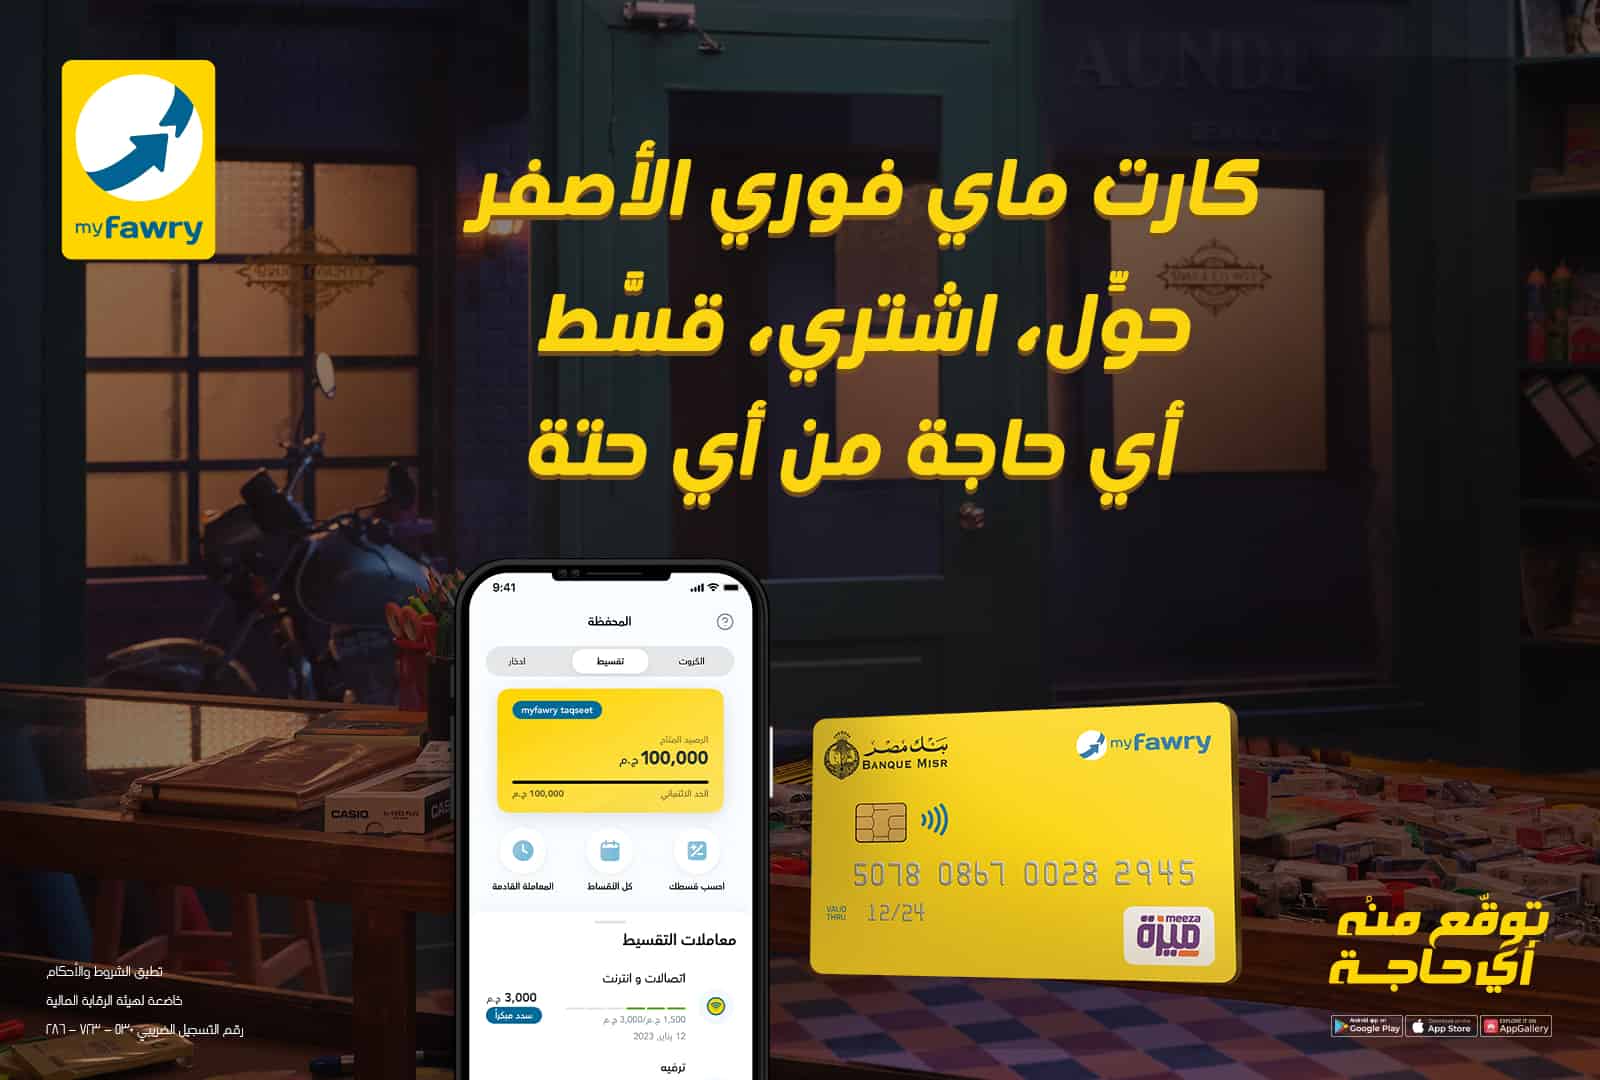 فوري تتيح خدمات تحويل الأموال عبر بطاقة myfawry yellowcard مسبقة الدفع
